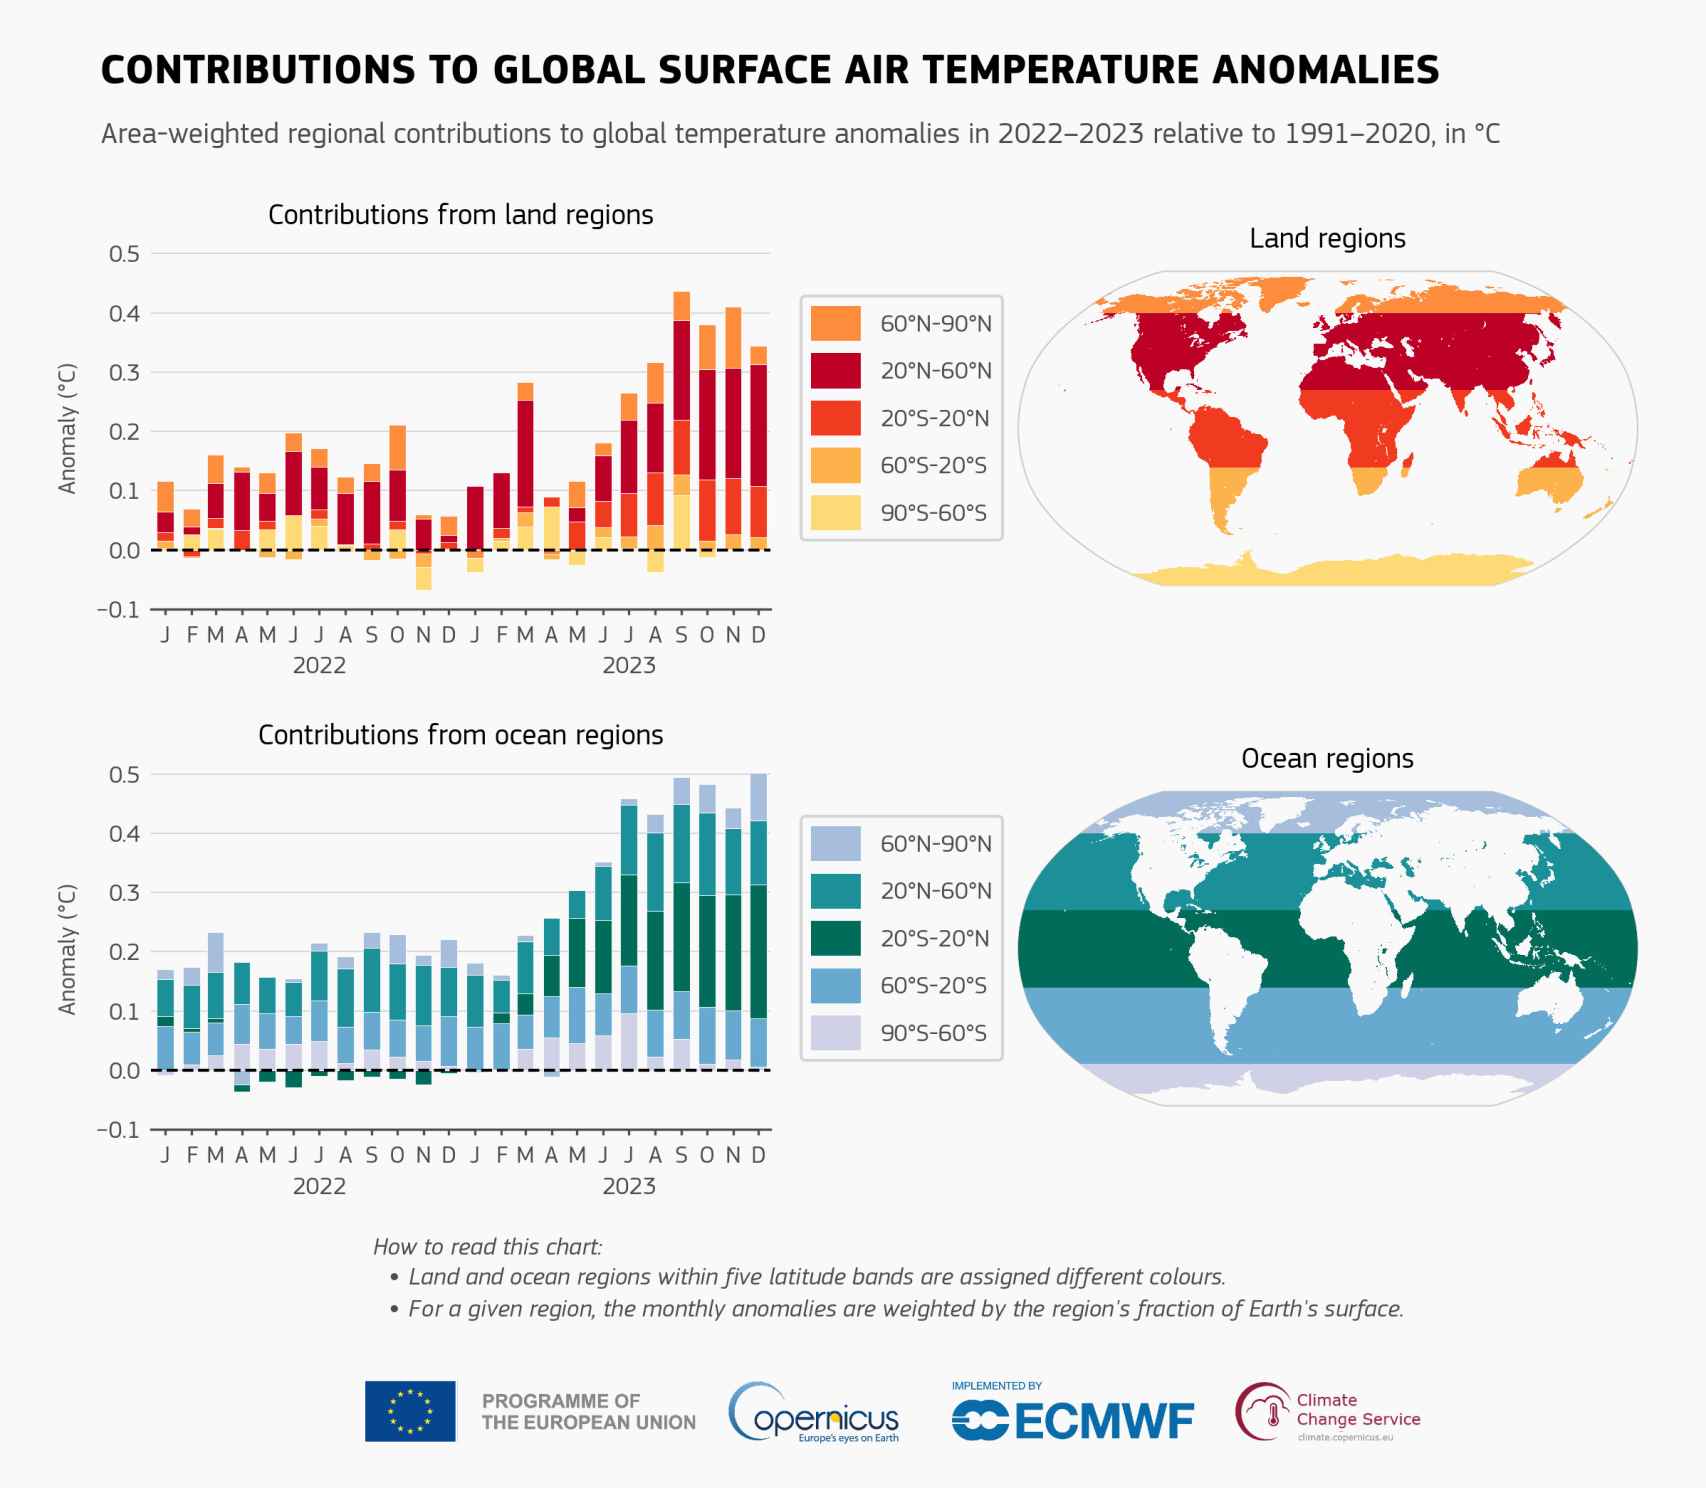 Contribuciones latitudinales a las anomalías mensuales de la temperatura del aire en la superficie global en relación con el período de referencia 1991-2020, mostradas por separado para las regiones terrestres y oceánicas.